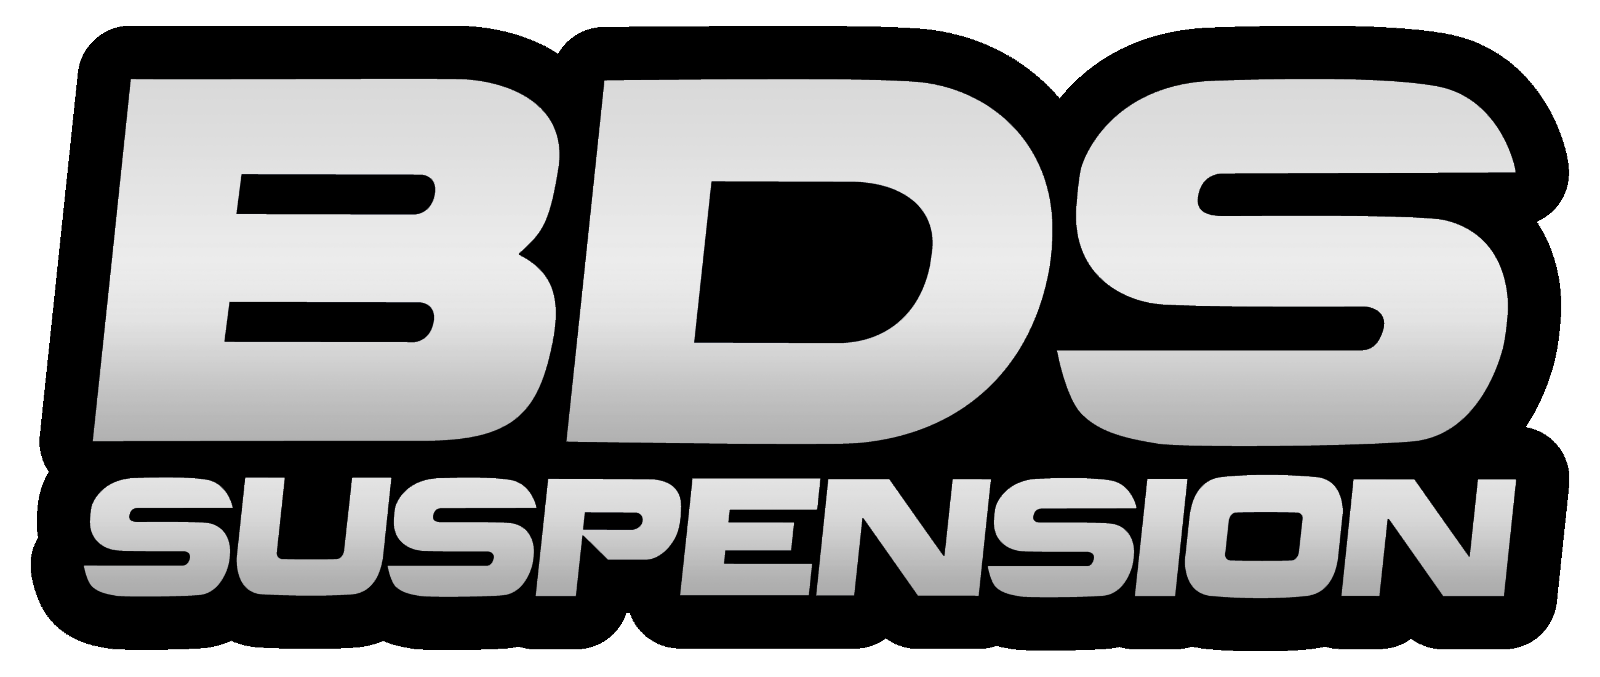 BDS BDS1820FS 4.5 Inch Lift Kit - Chevy Silverado or GMC Sierra 2500HD/3500HD (11-19)